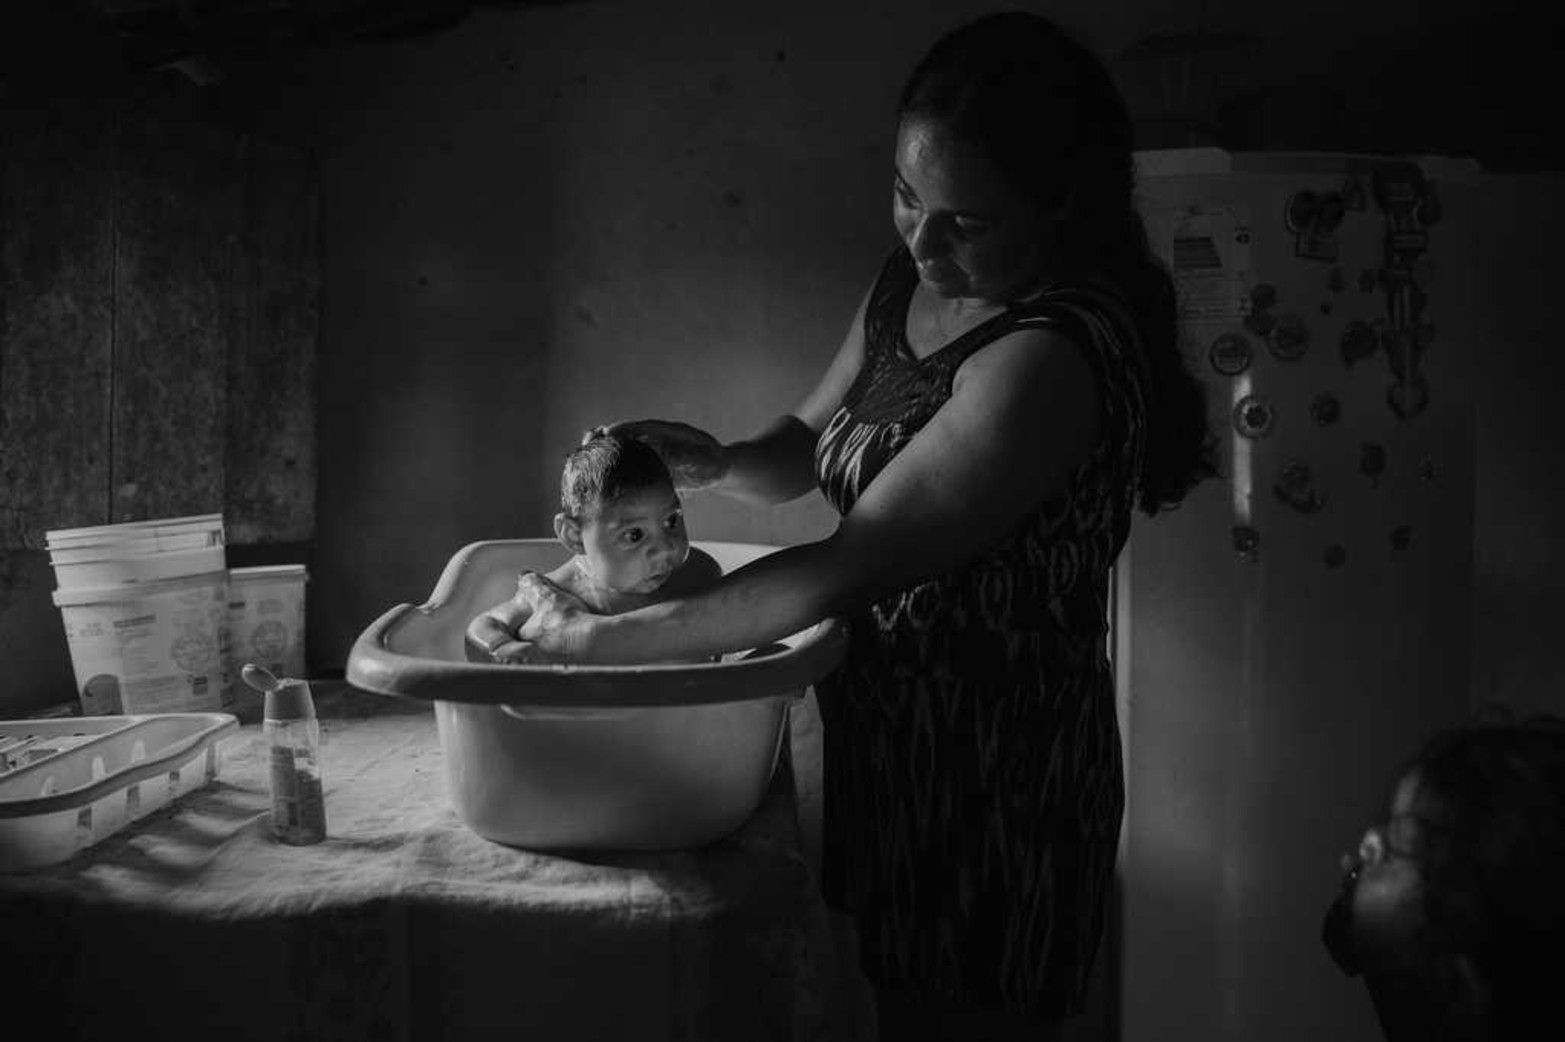 Una mujer de 30 años le da un baño a su bebé de tres meses el 20/10/2016 en Sao Vicente do Seridó, Brasil. El niño nació con microcefalia a raíz del virus del Zika. La foto de Lalo de Almeida para Folha Sao Paulo fue premiada por la fundación World Press Photo.